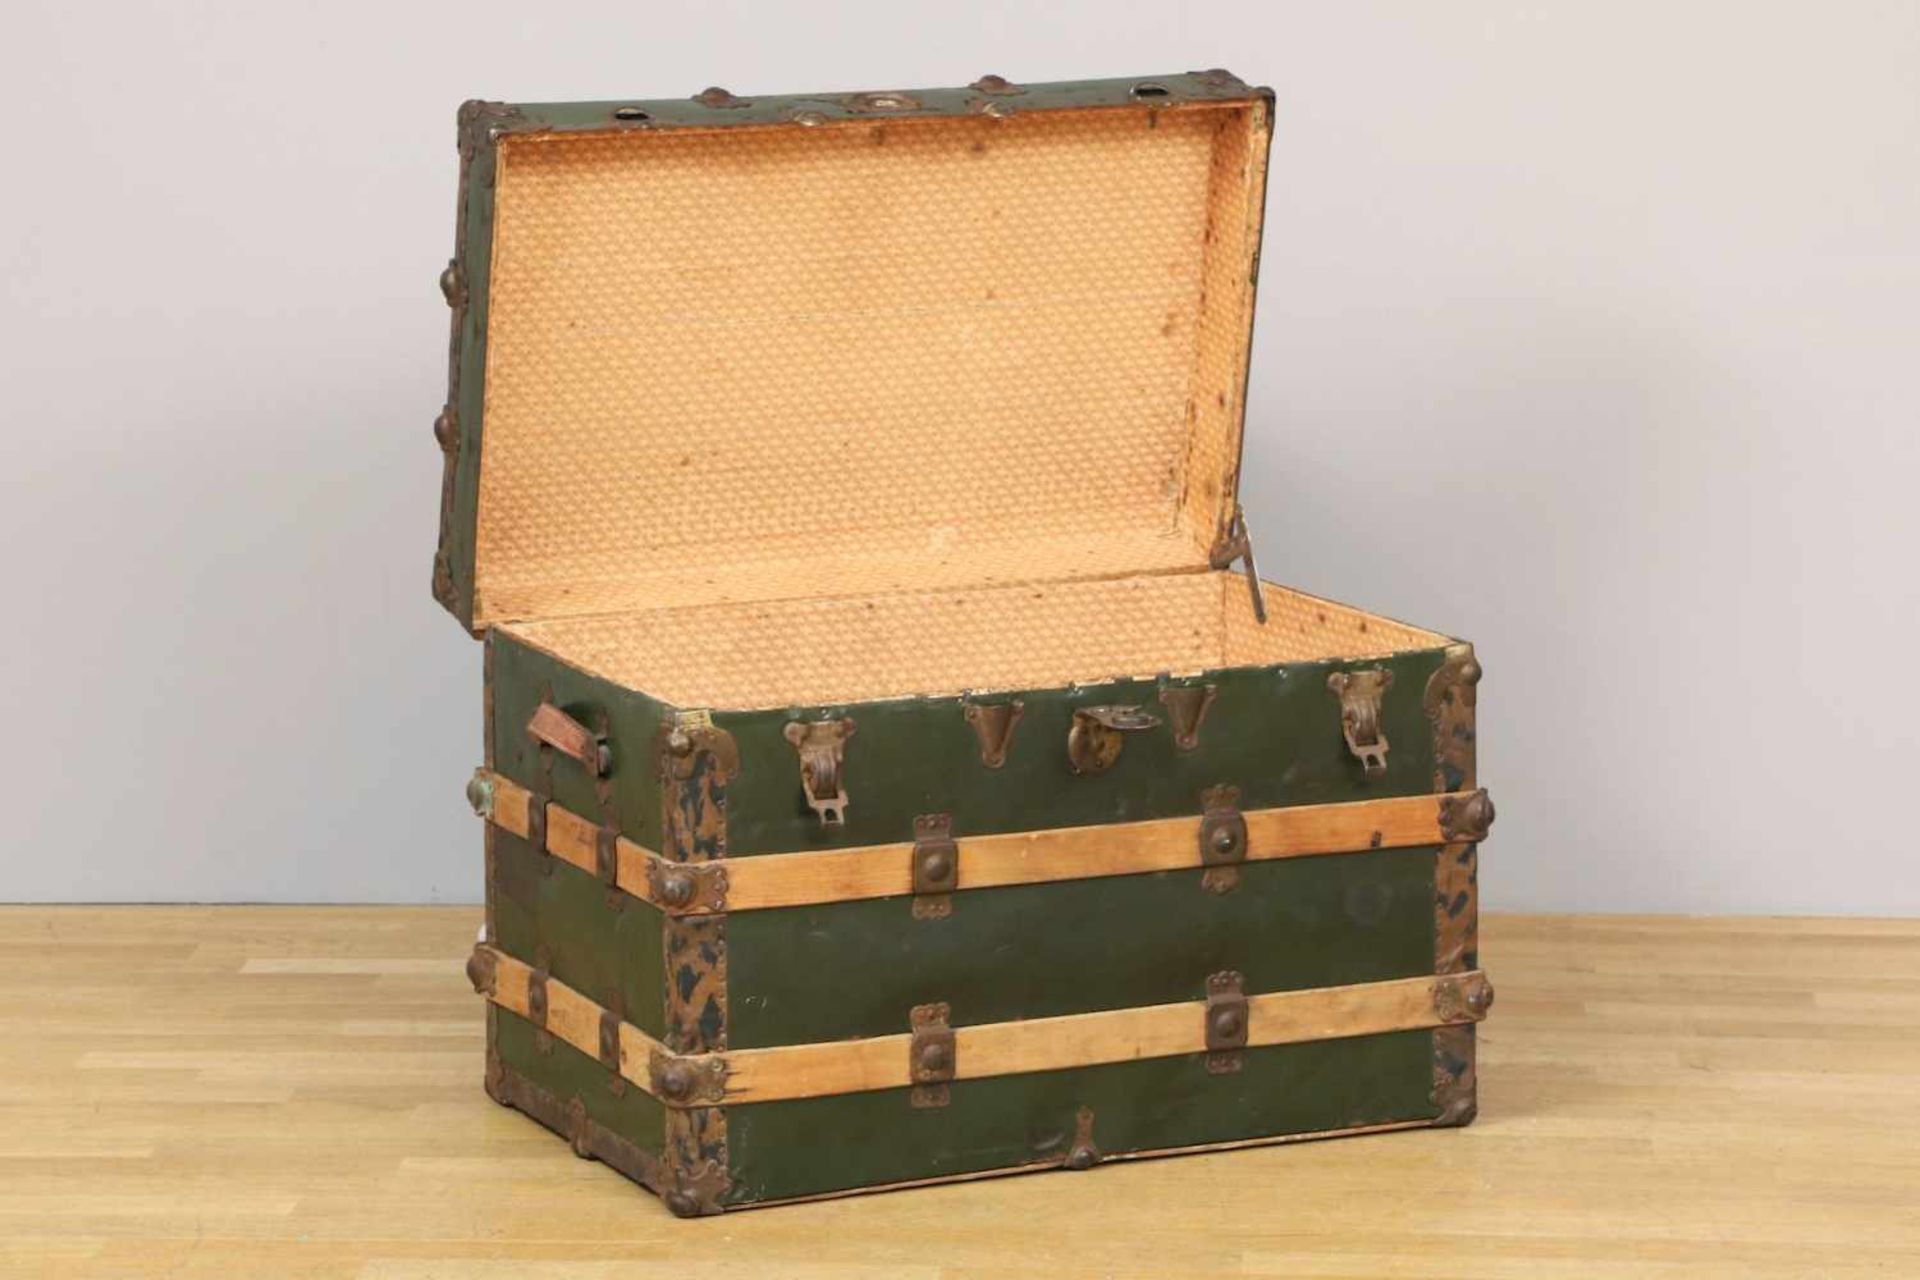 Überseekofferspätes 19. Jahrhundert, eckiger Korpus mit Holz- und Blechbeschlag, grün lackiert, - Bild 2 aus 2